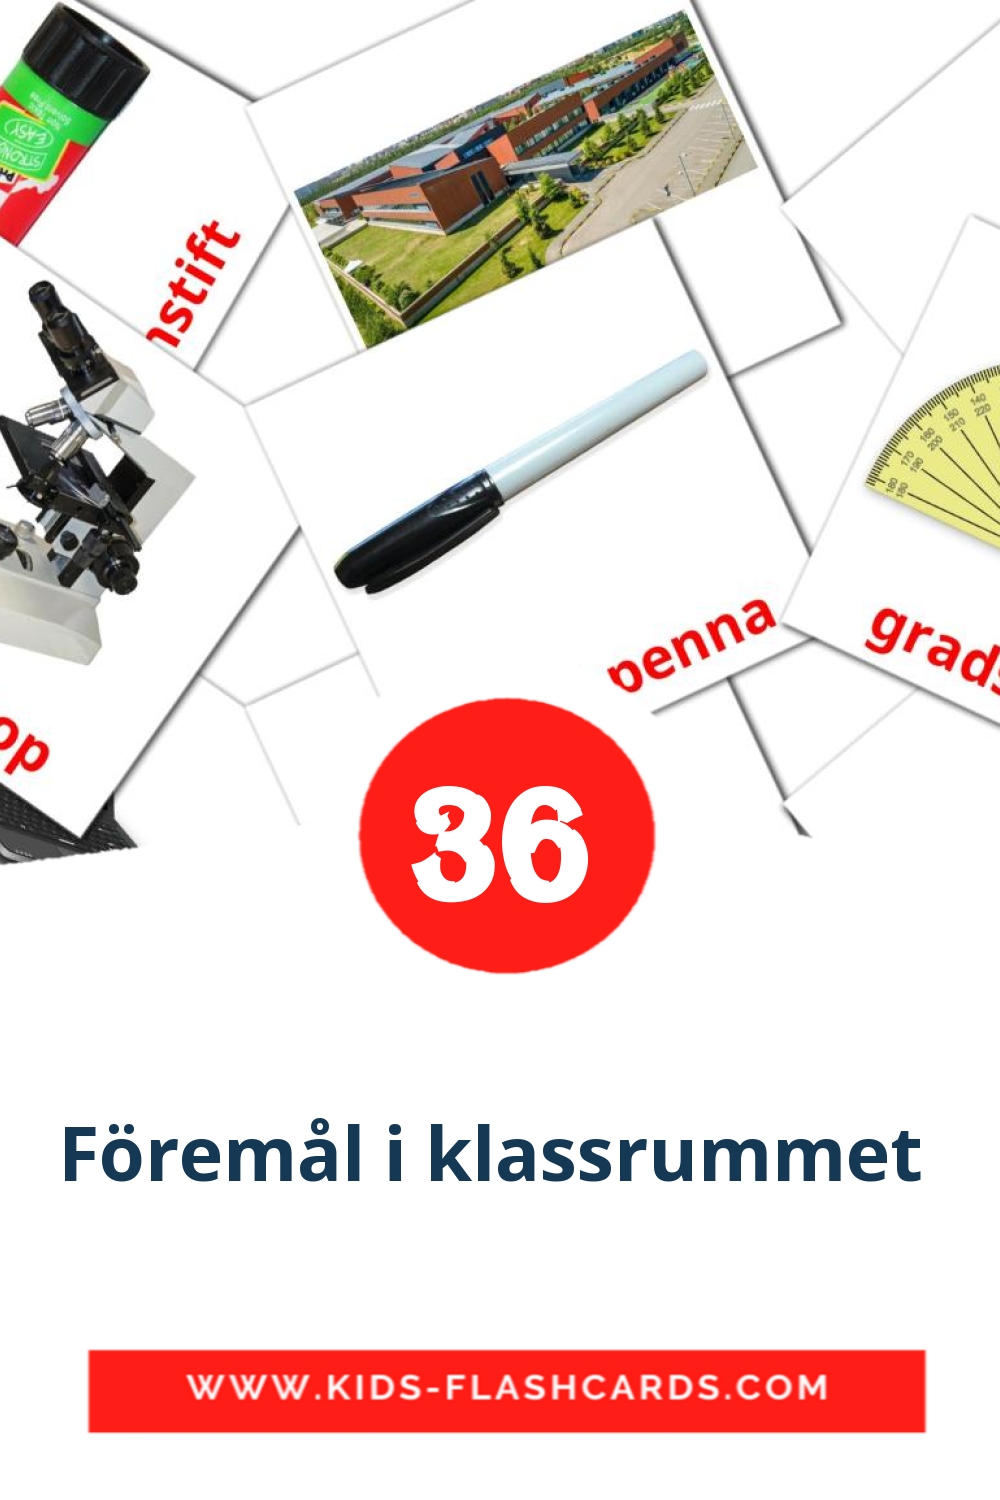 36 tarjetas didacticas de Föremål i klassrummet  para el jardín de infancia en sueco